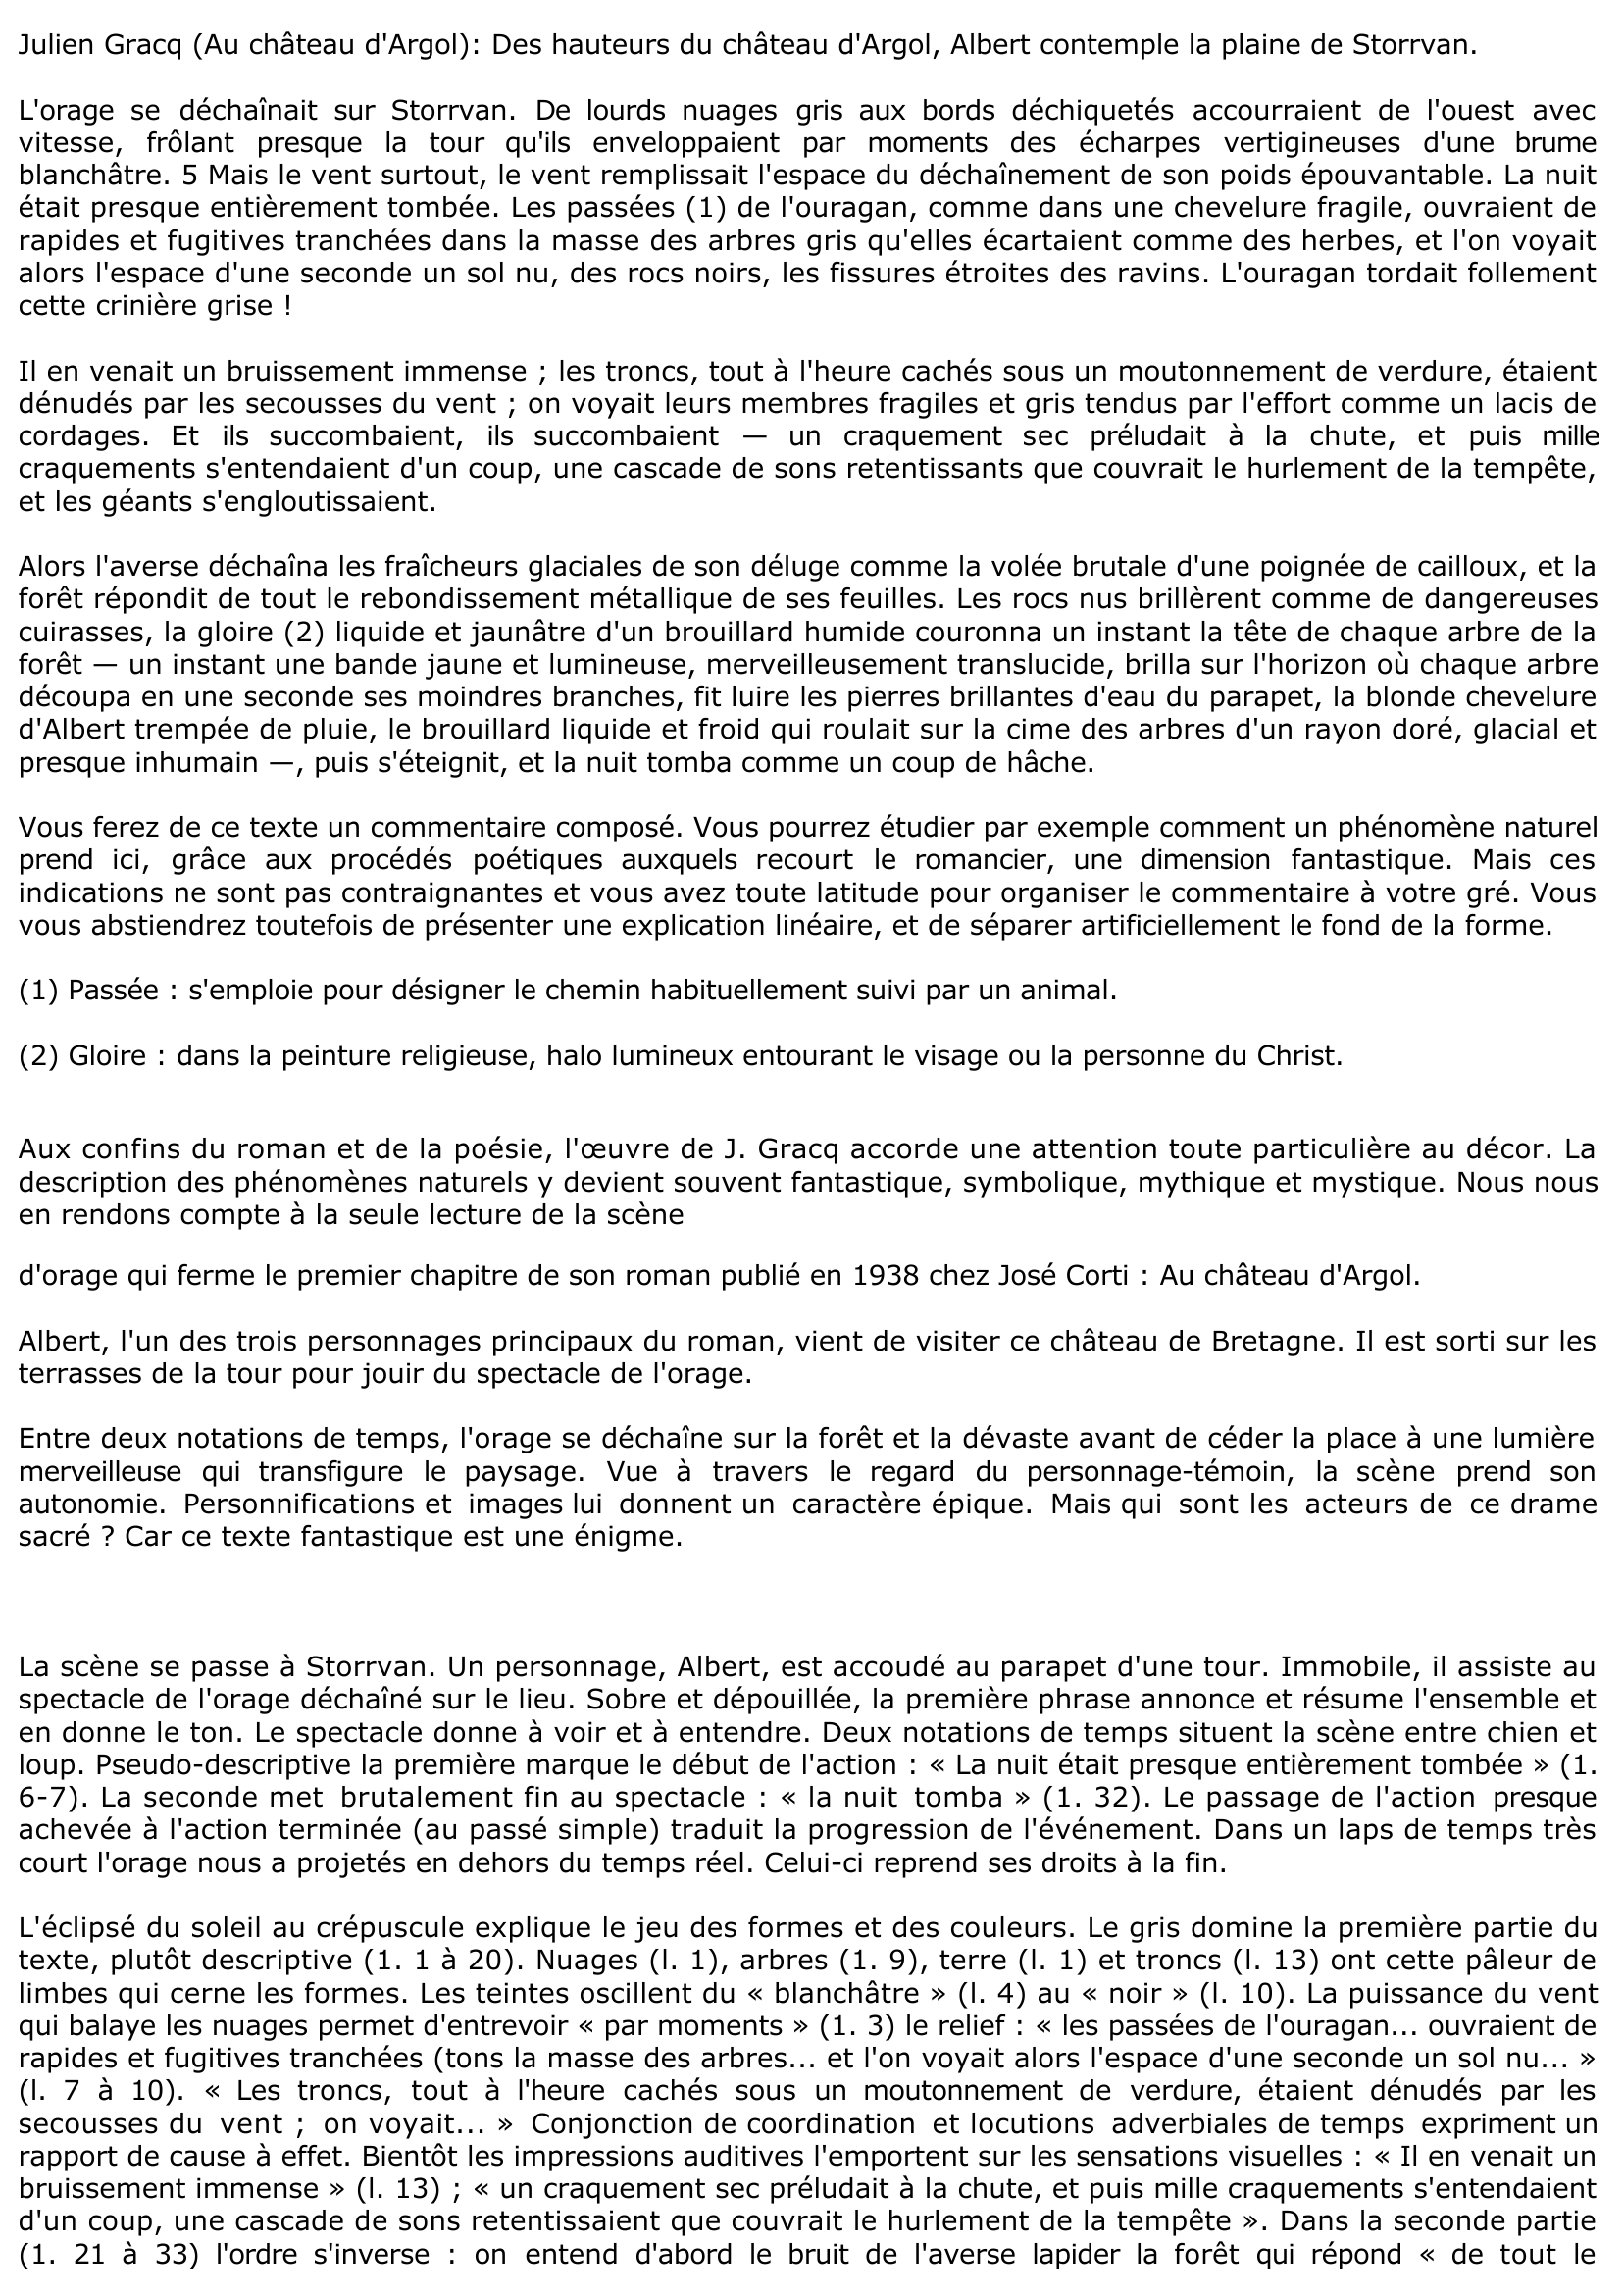 Prévisualisation du document AU CHÂTEAU D'ARGOL de Julien Gracq